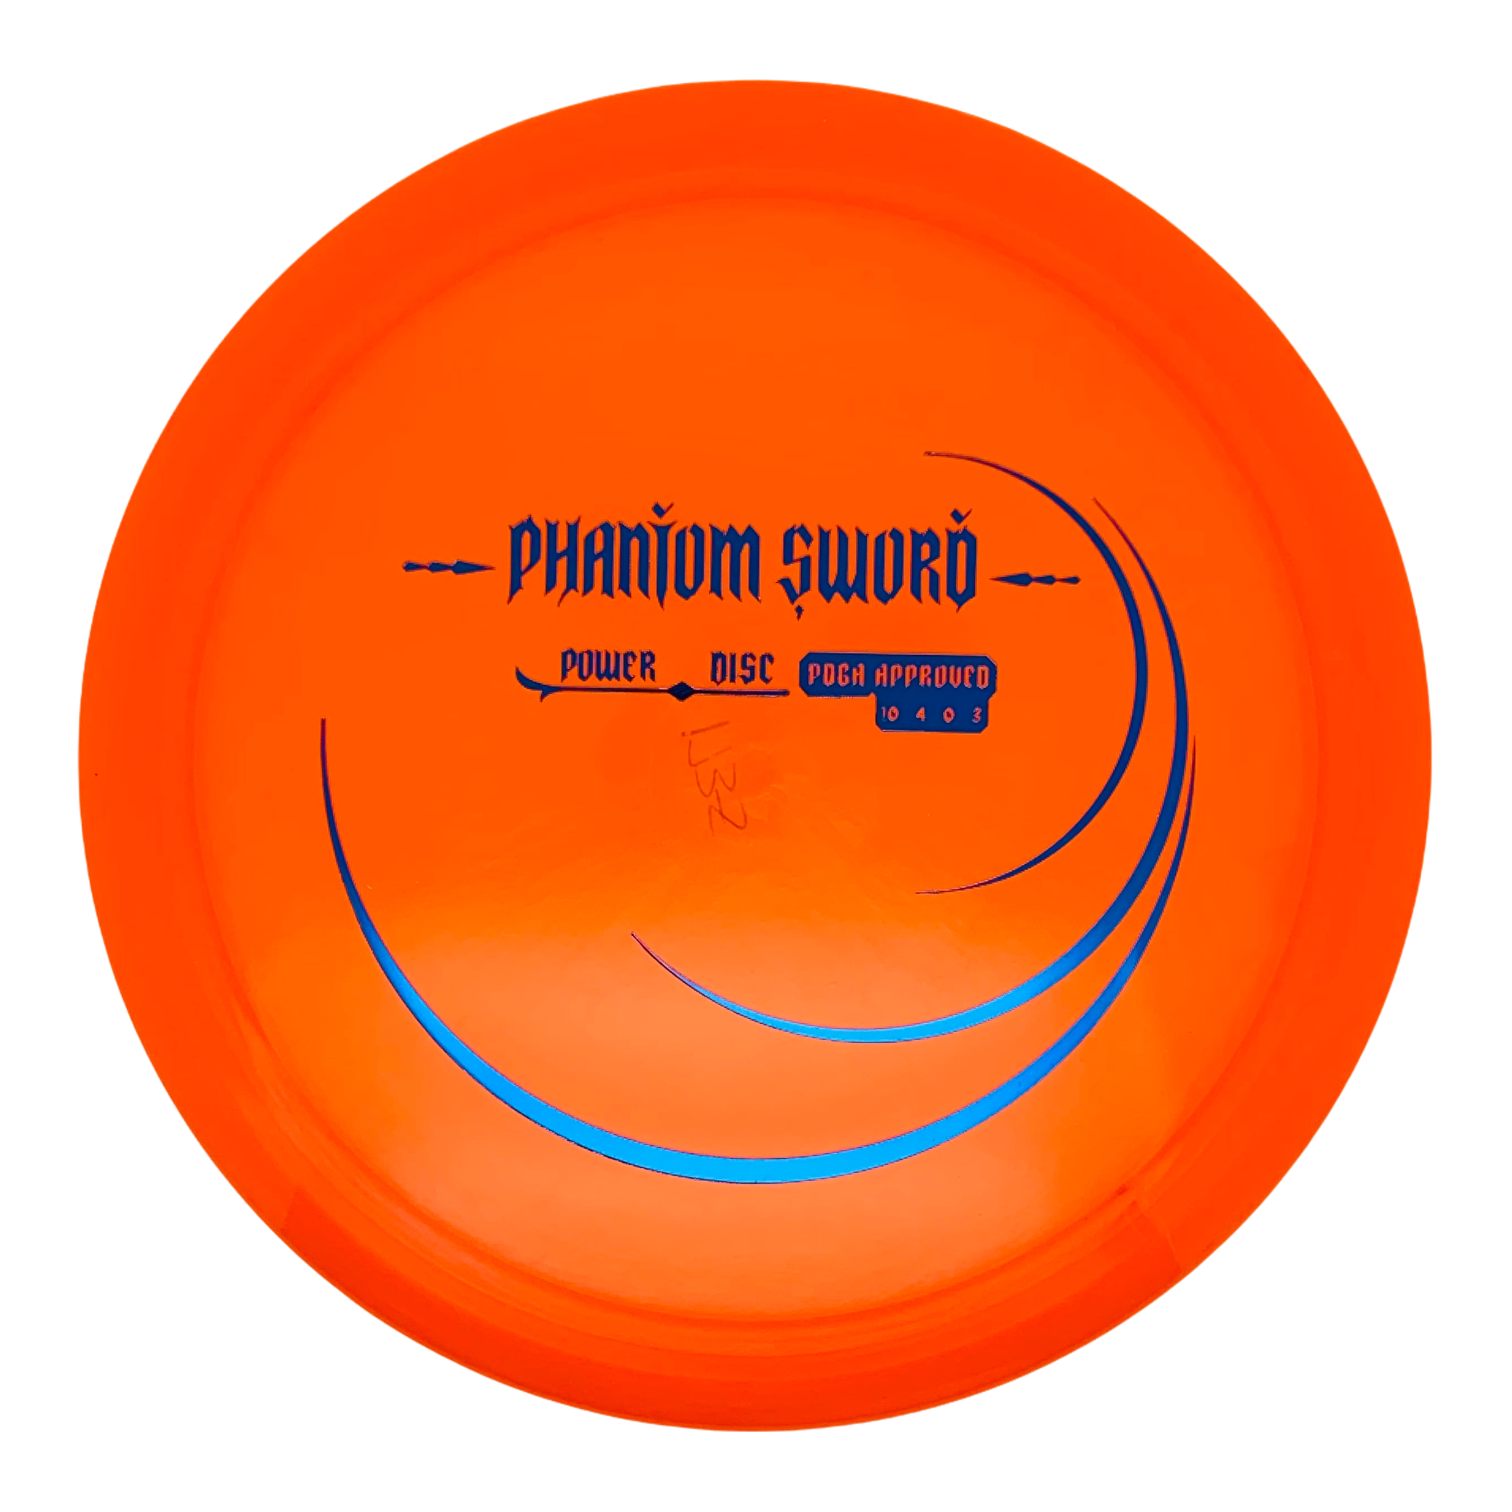 Innova Star PD Power Disc (Phantom Sword) – Reaper Disc Supply